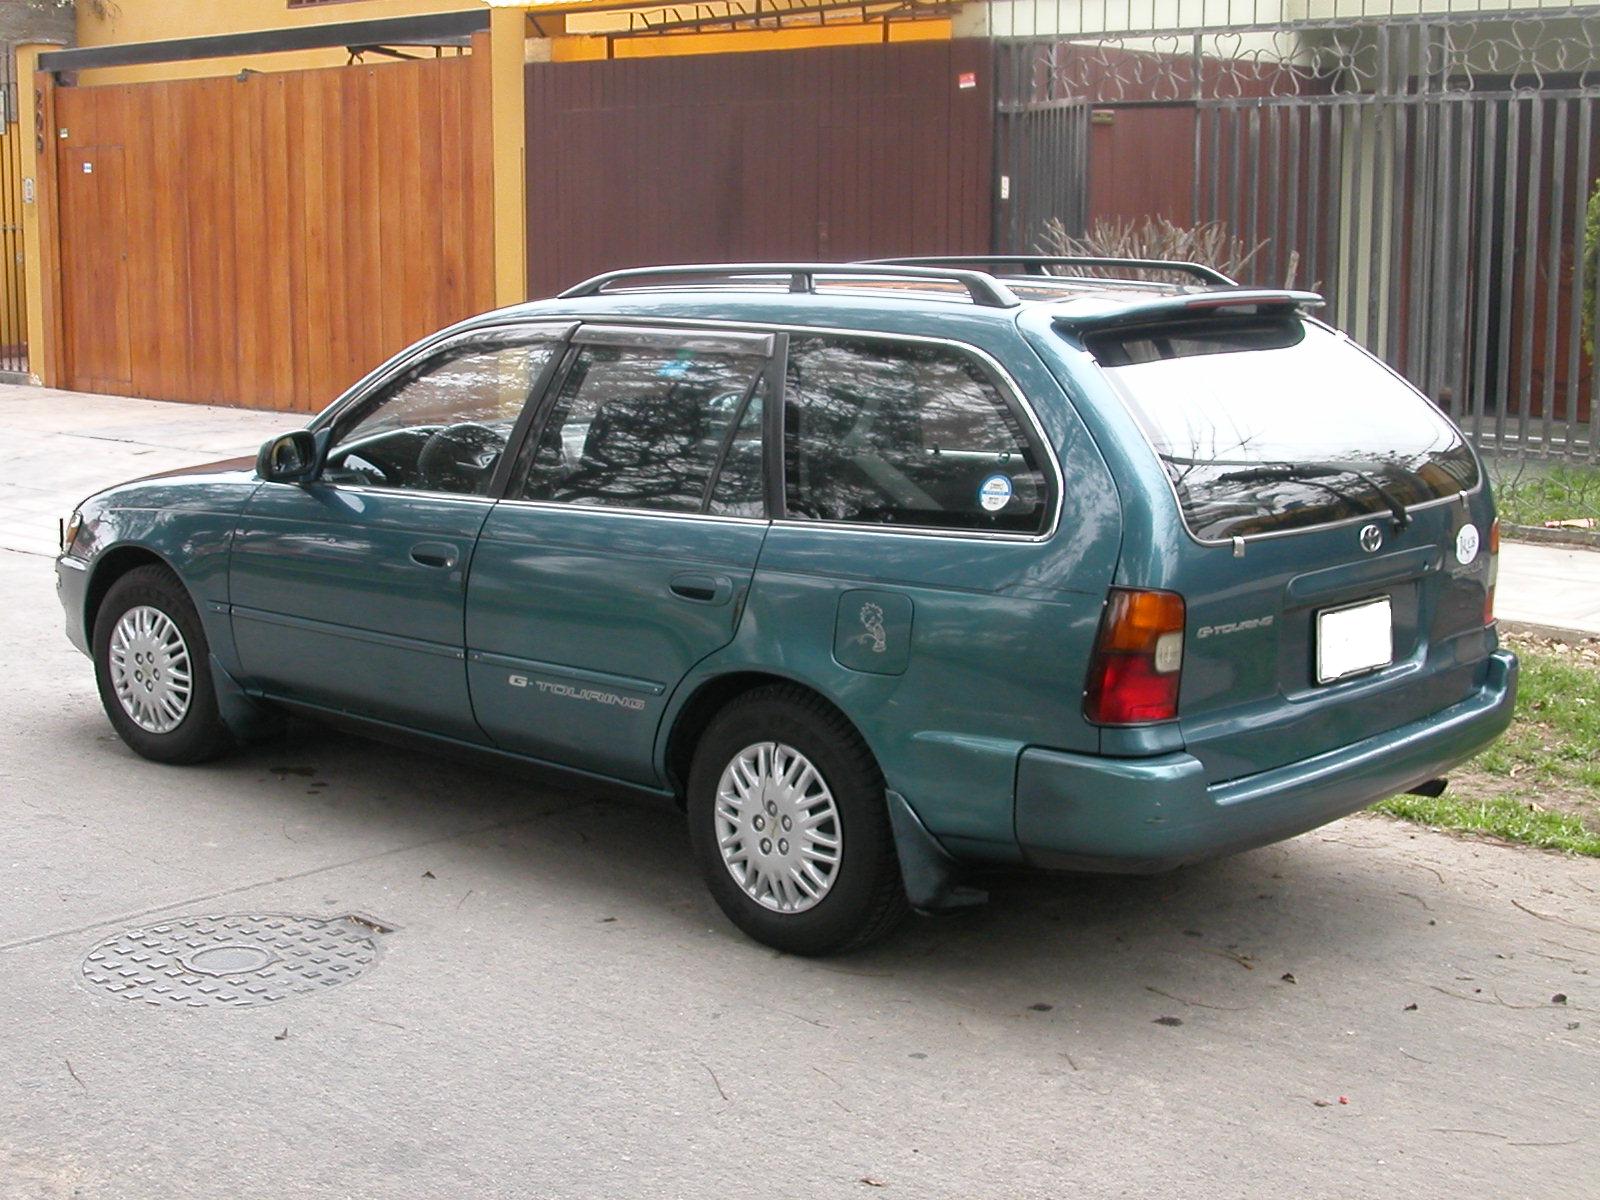 Тойота универсал отзывы. Toyota Corolla универсал дизель 1990. Toyota Corsa универсал. Тойота Королла универсал 1996г 4х4. Тойота Королла универсал 1990.